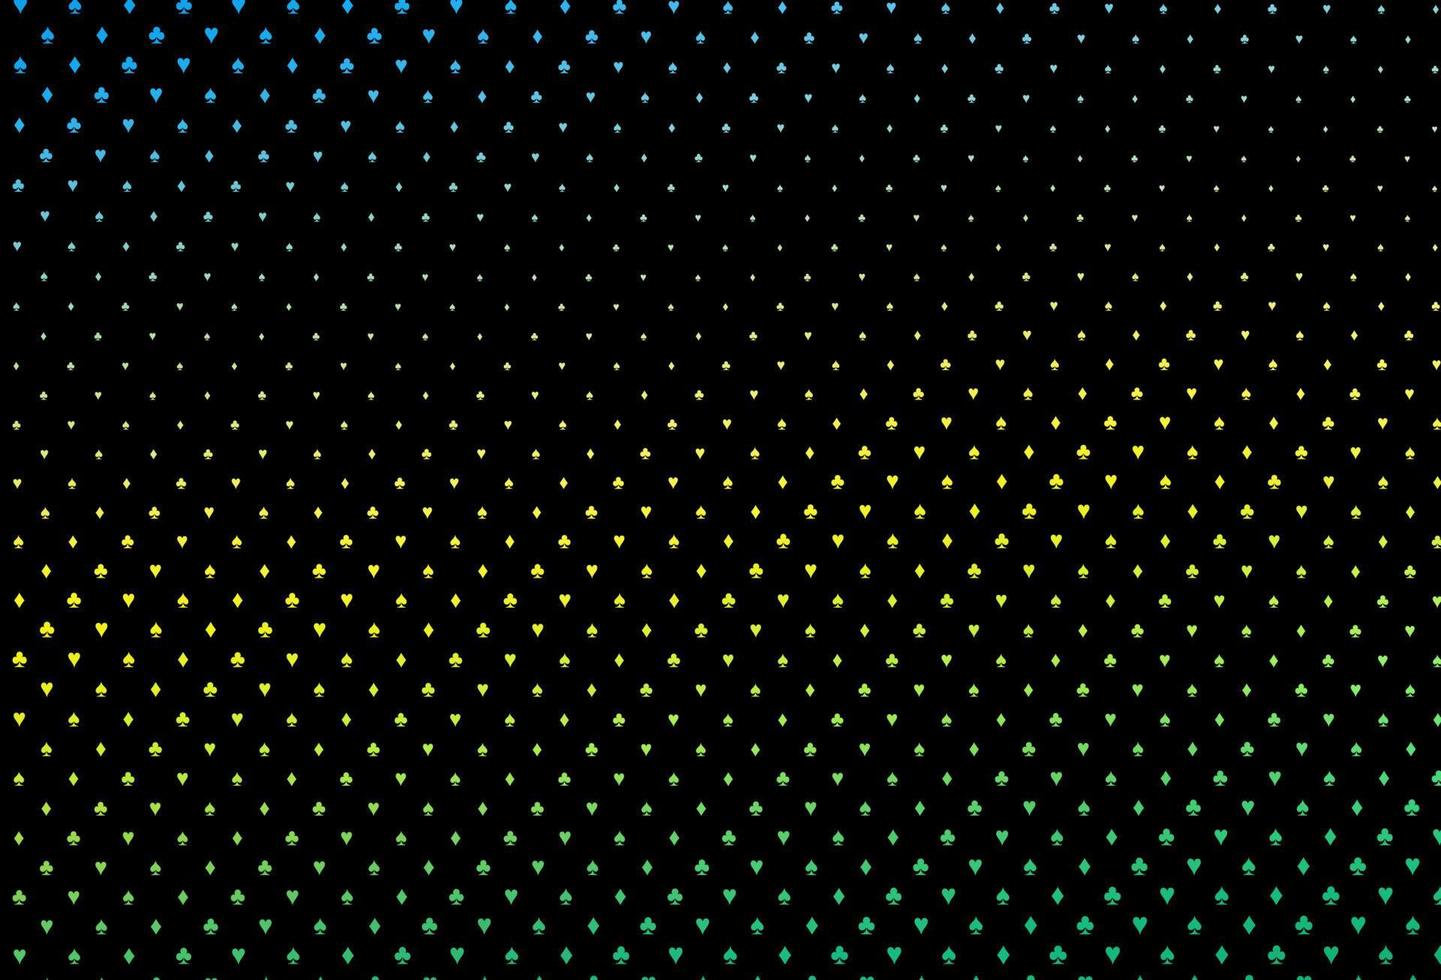 couverture vectorielle bleu foncé et jaune avec des symboles de pari. vecteur